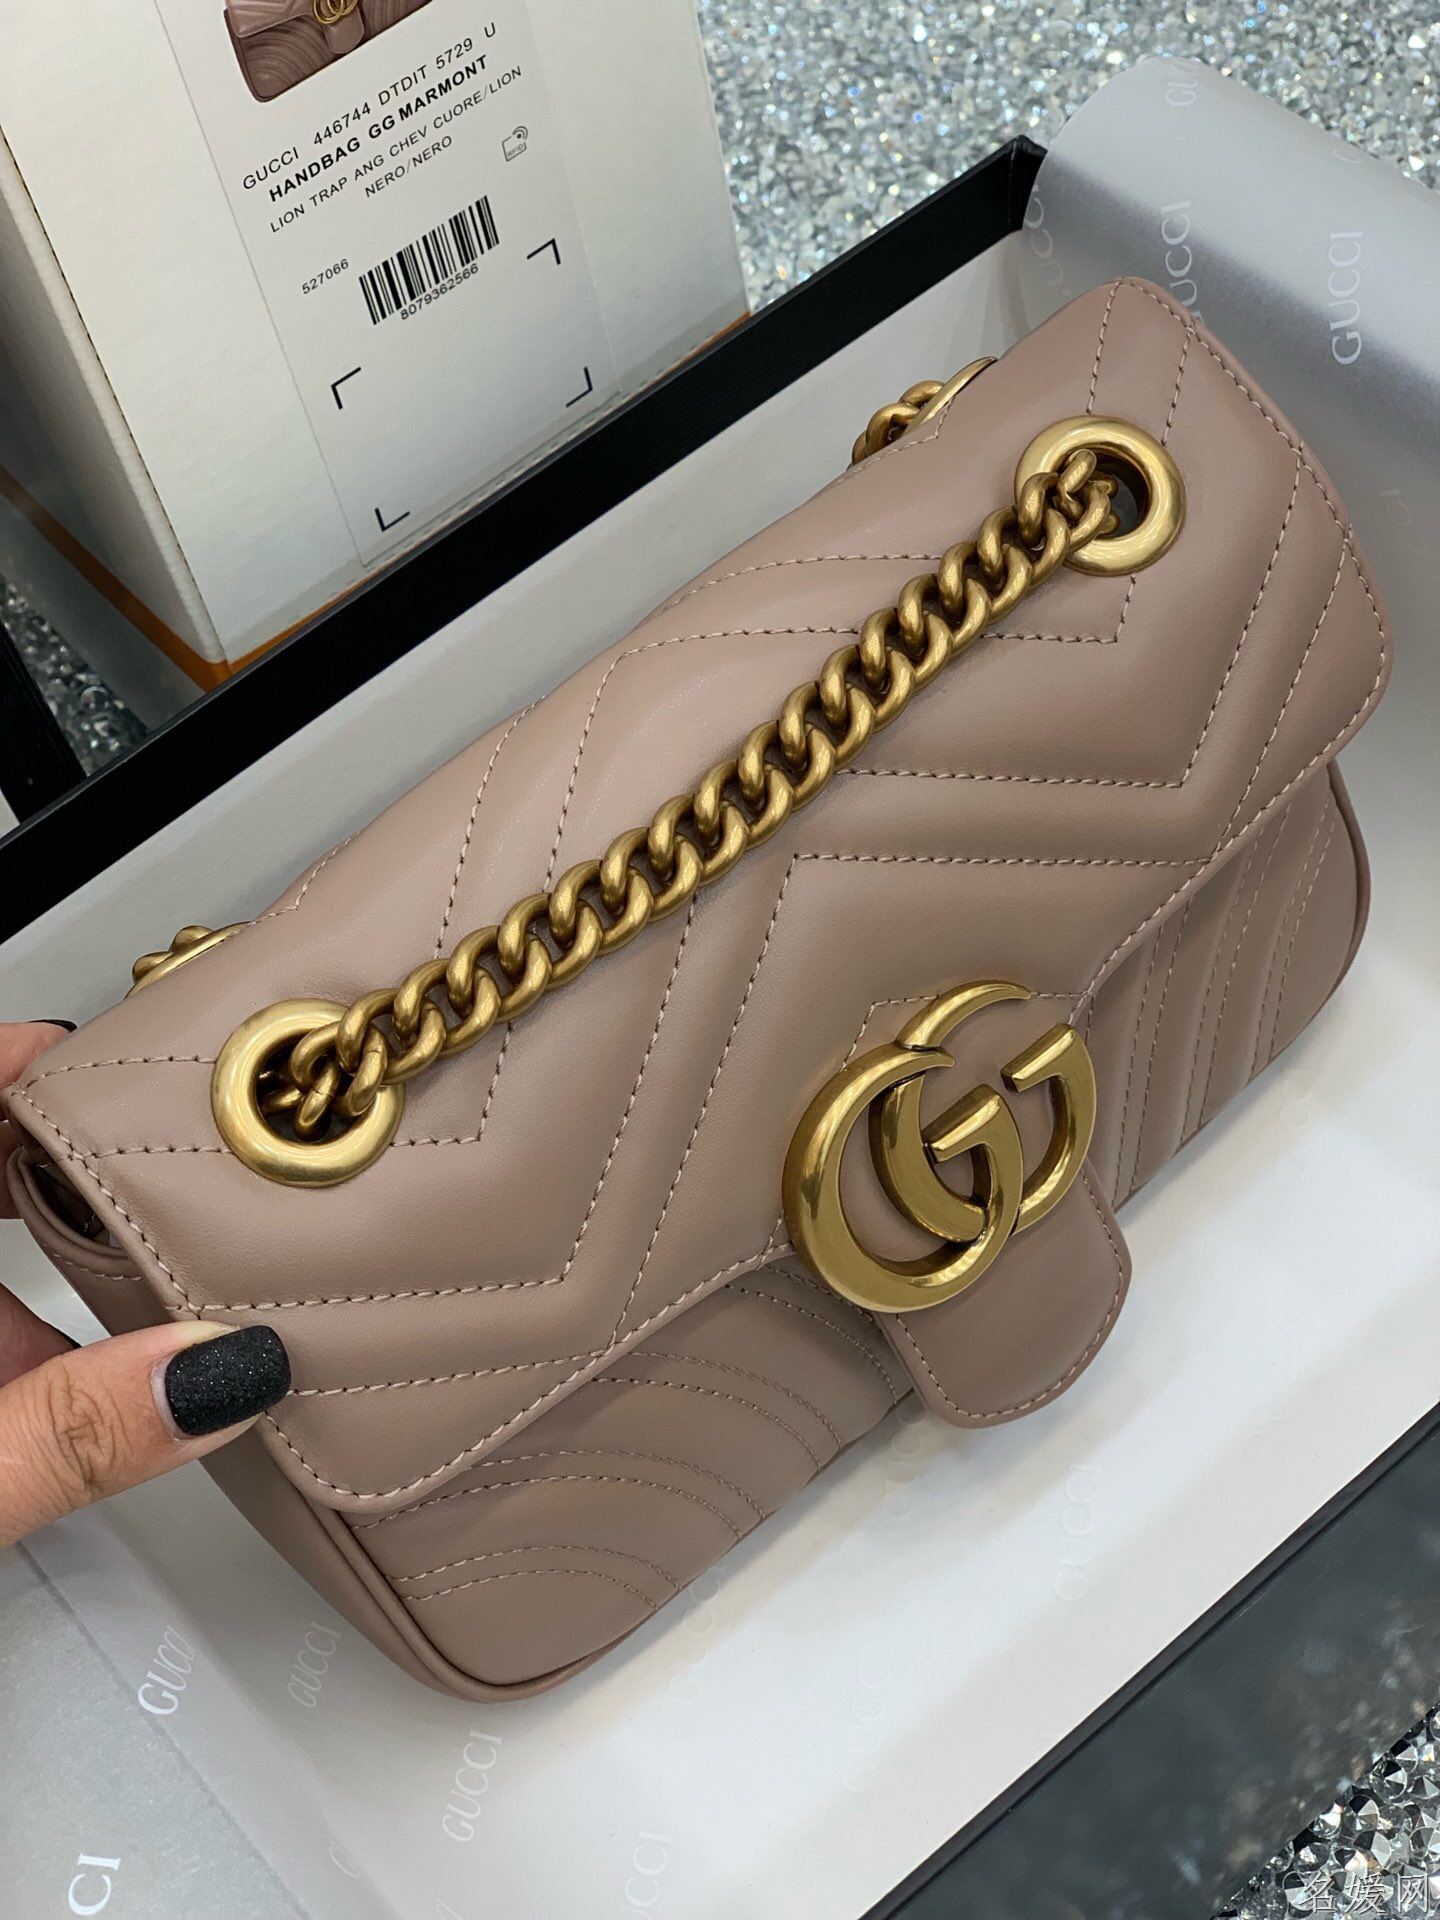 Gucci GG Marmont系列绗缝迷你手袋 446744奶茶色